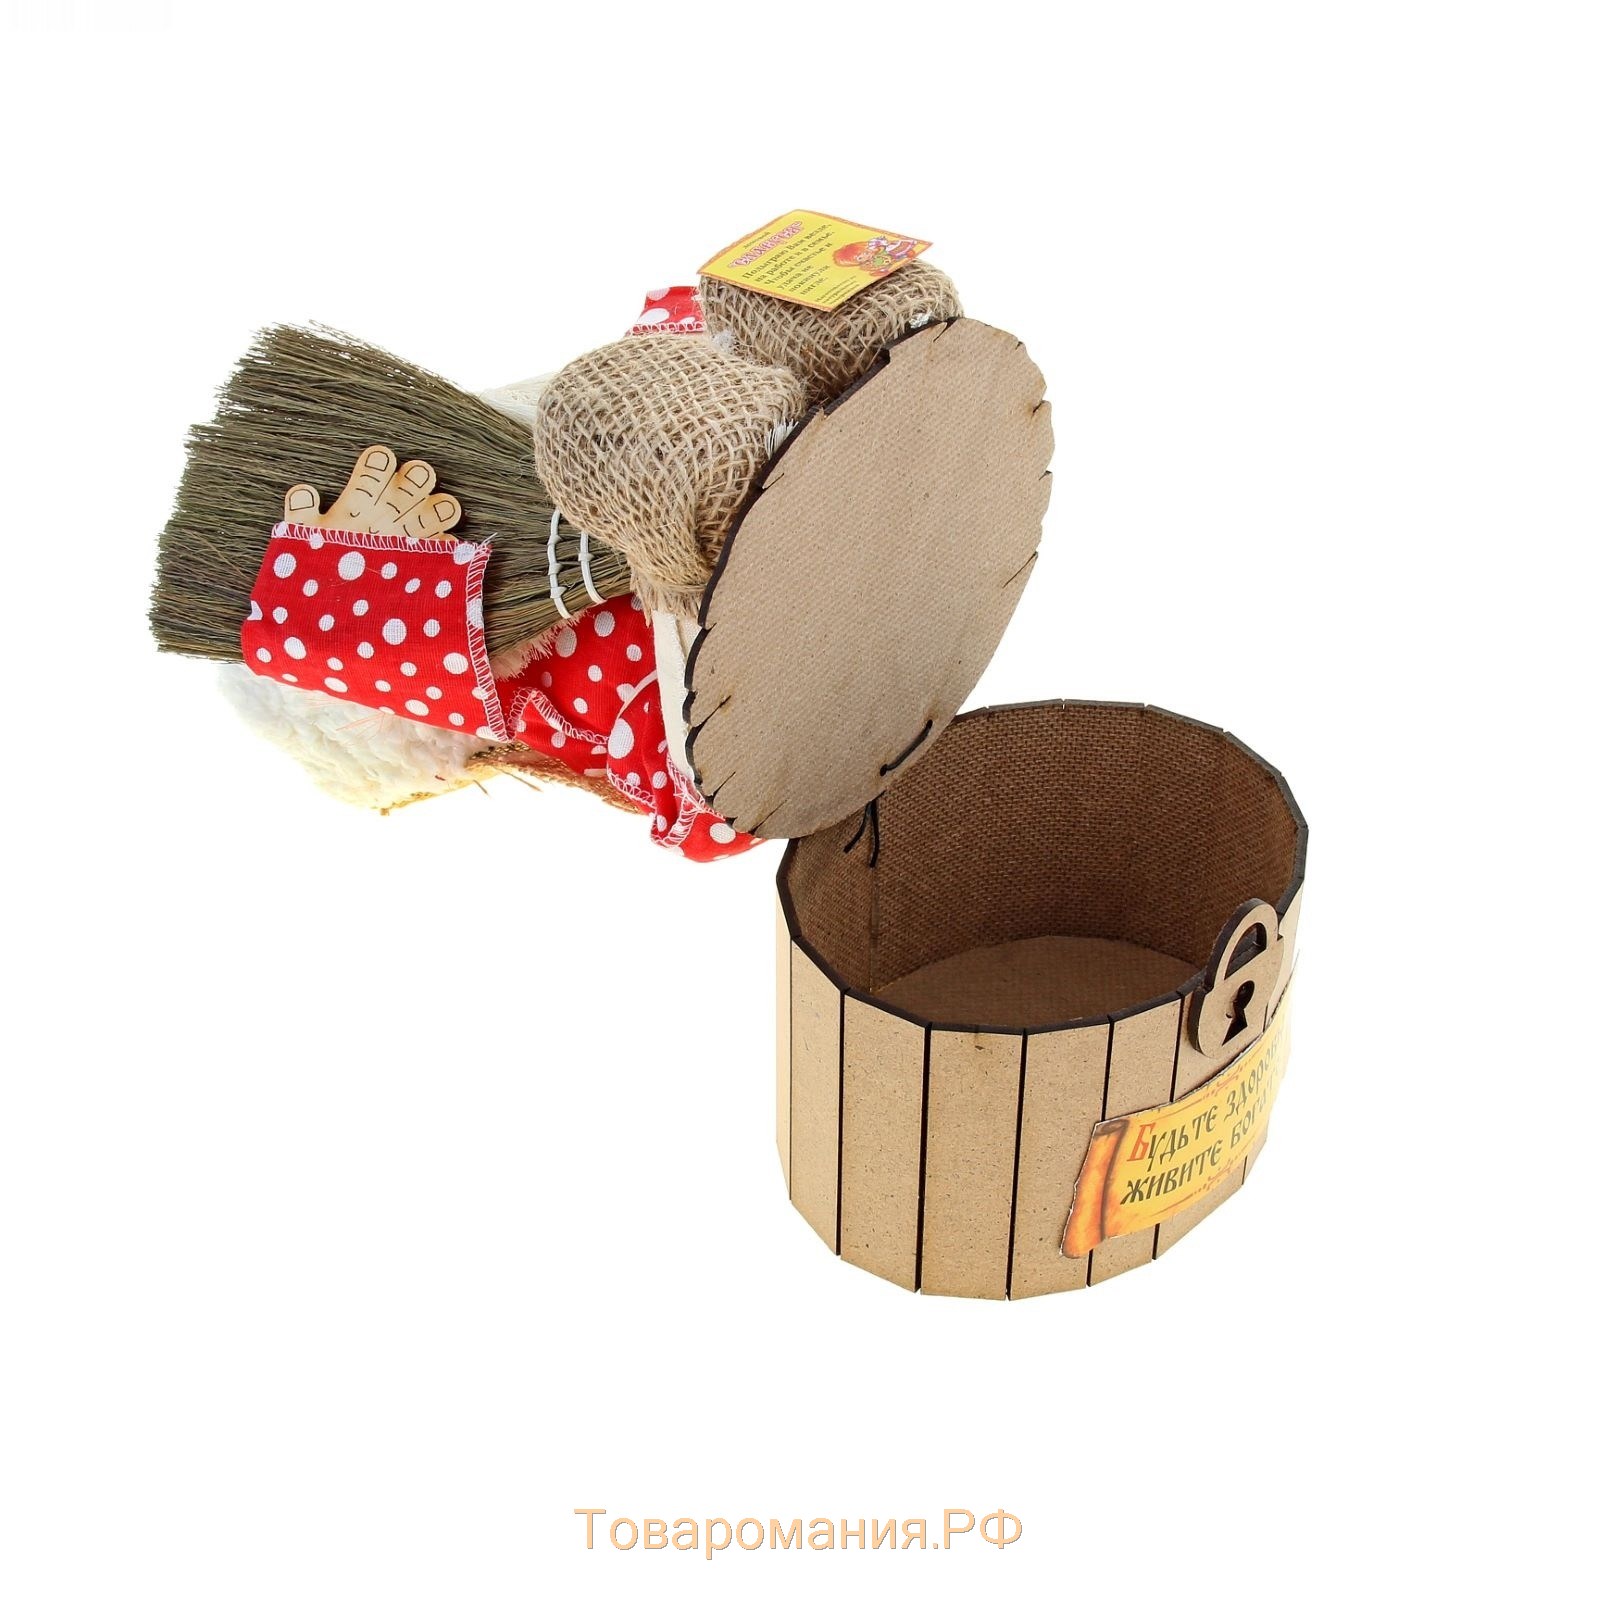 Оберег-домовой "Славуся в шапке, на сундуке с метлой и подковой", 36х23х16 см, микс